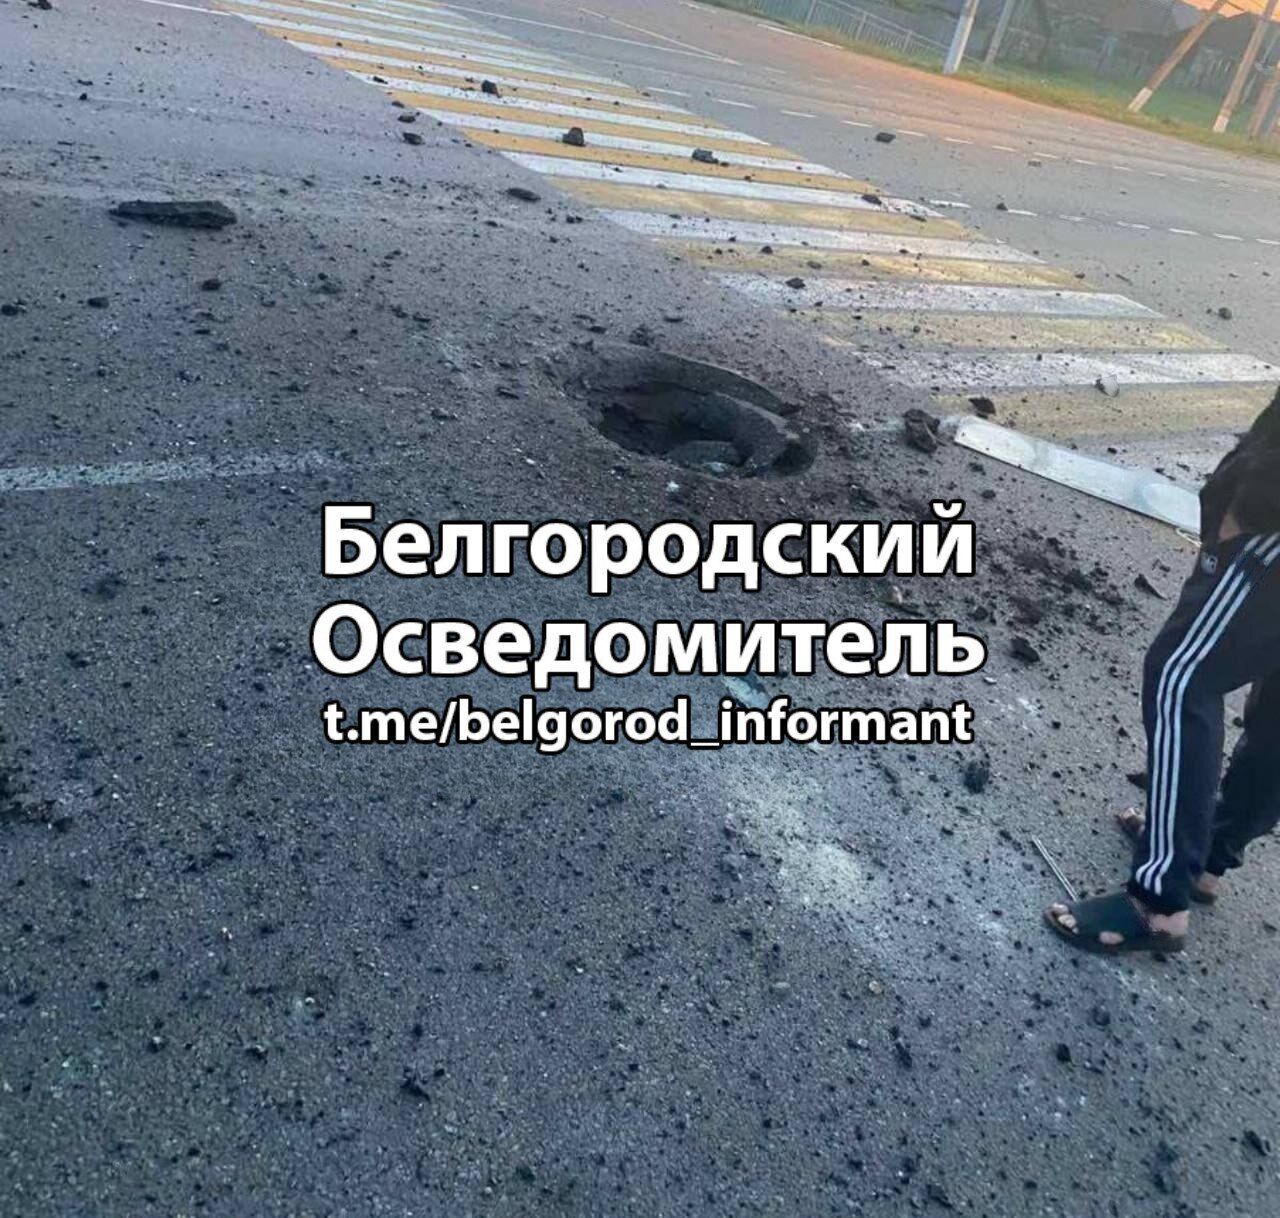 В Белгородской области пожаловались на взрывы, прилеты и атаку дронов: все детали и видео